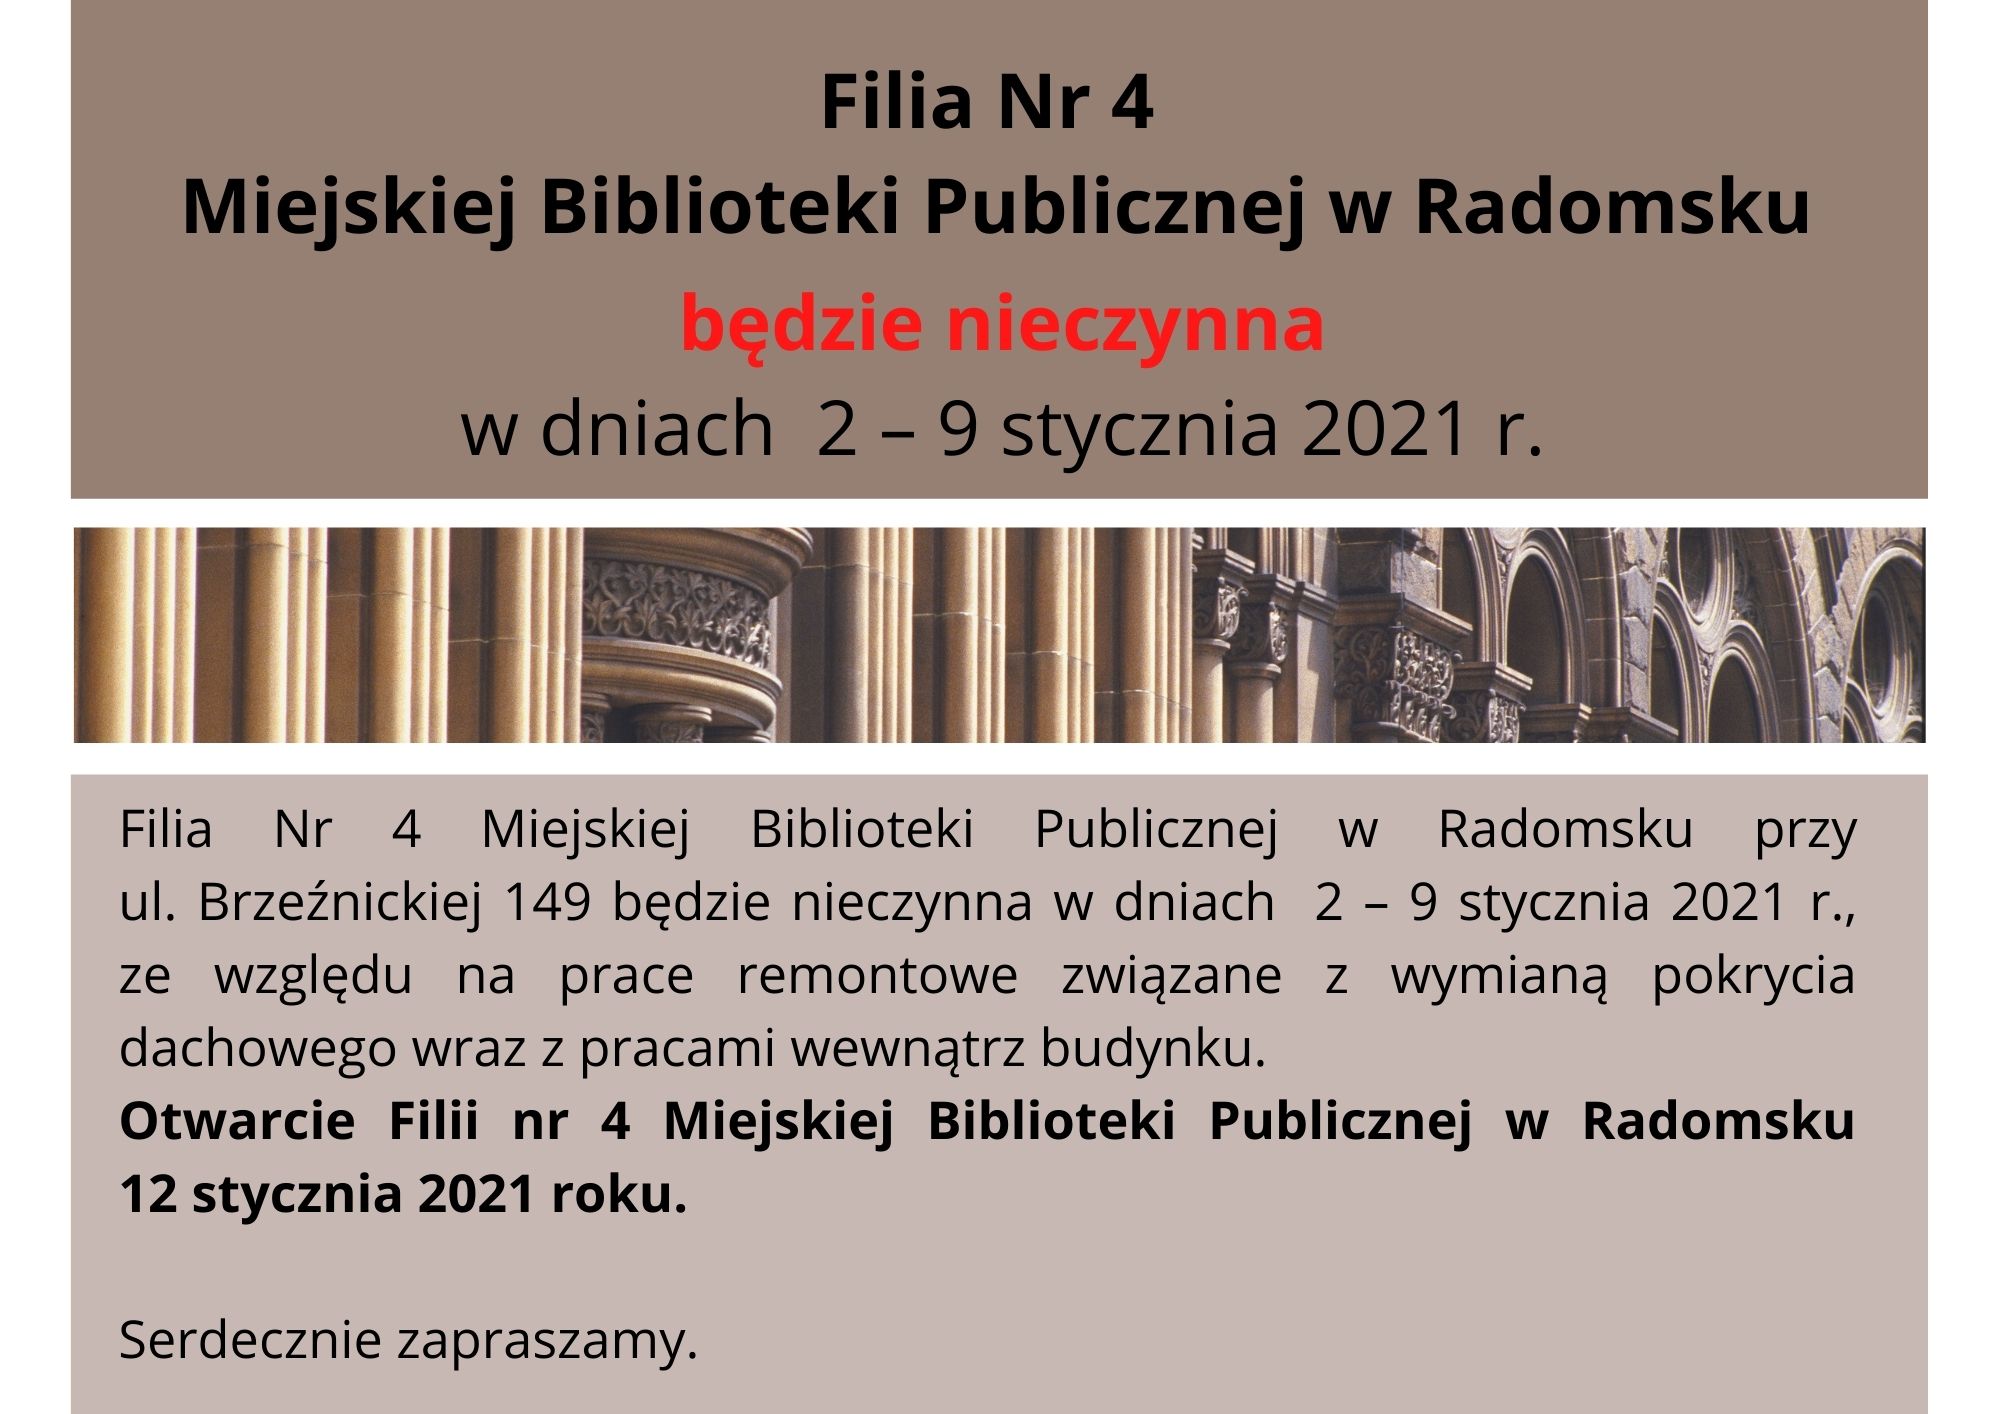 Filia Nr 4 Miejskiej Biblioteki Publicznej w Radomsku2